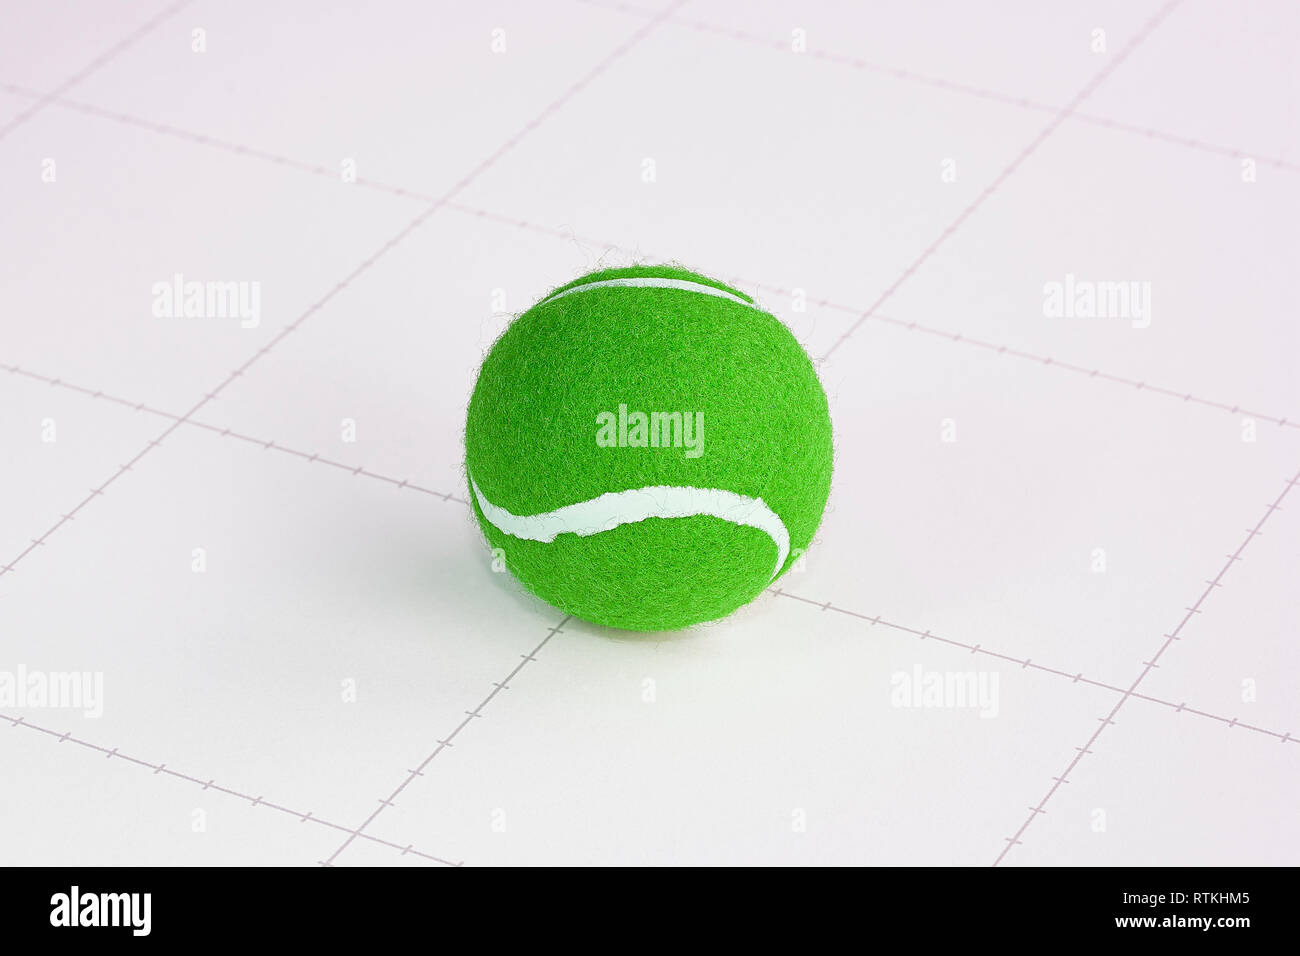 Grün, Tennis, Kugel, weiß, Hintergrund, Neuheit, Raster Stockfoto